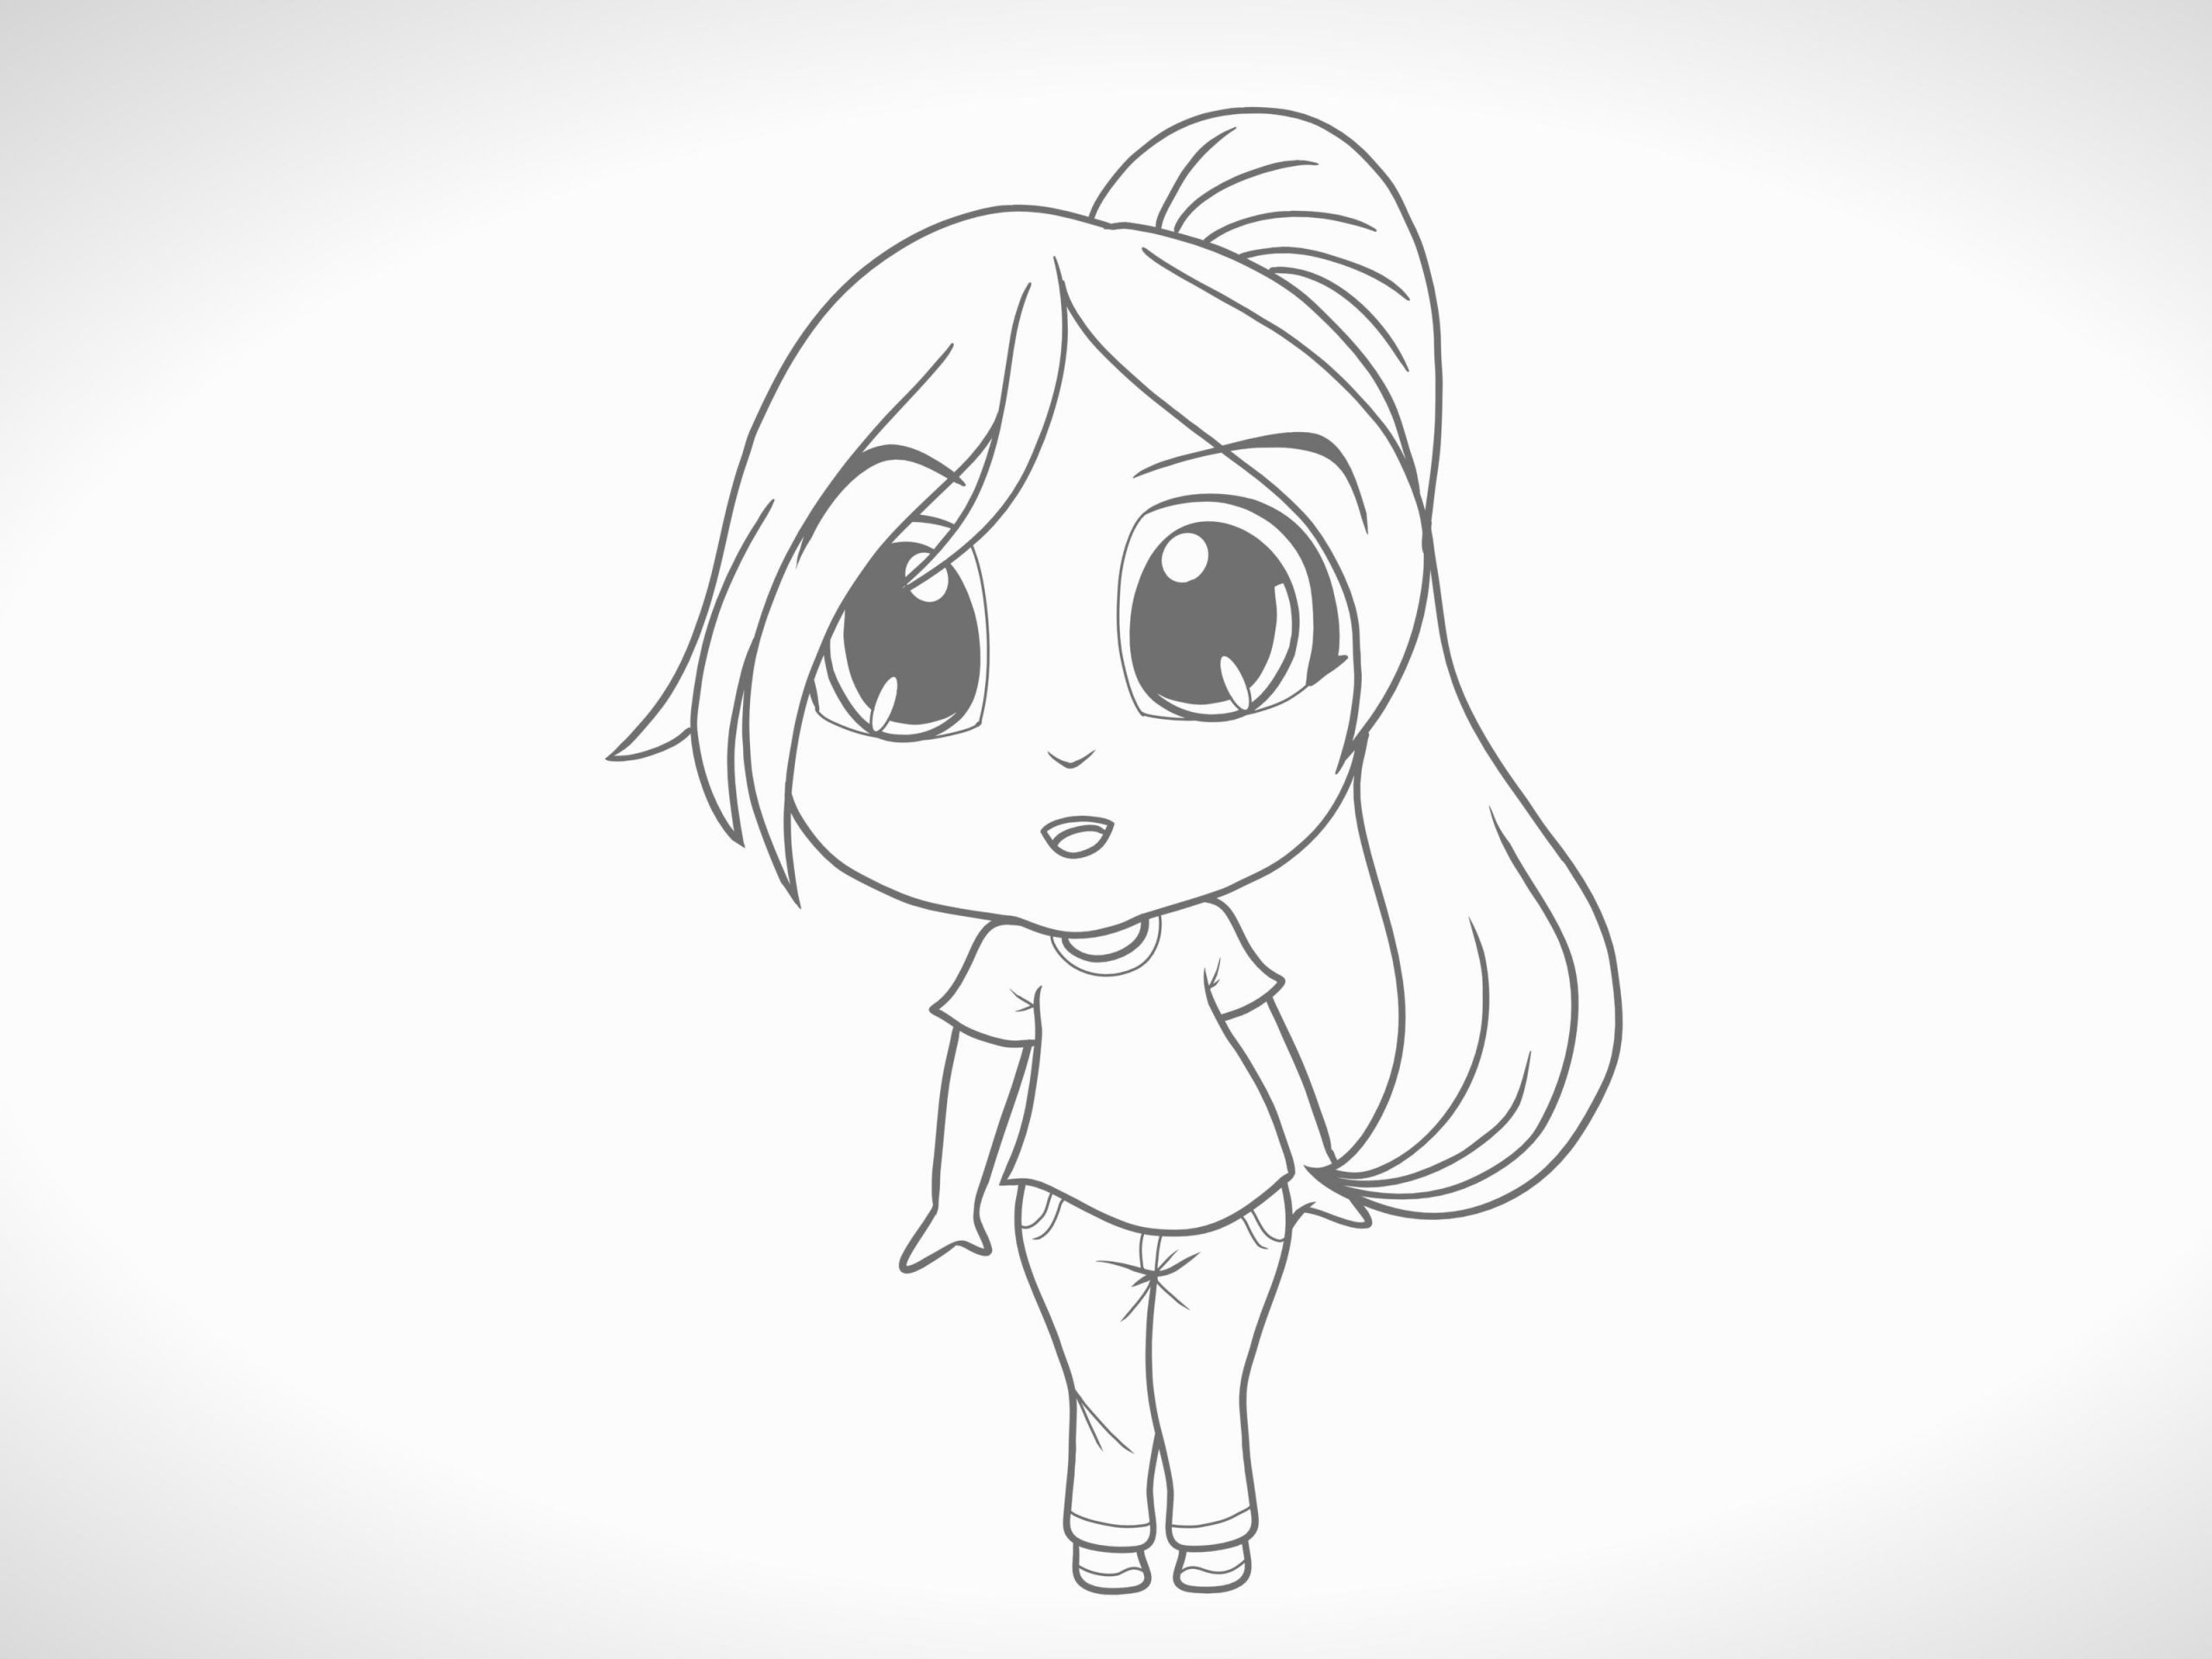 Learn Draw Anime Characters Eine Chibi Figur Zeichnen 12 Schritte Mit Bildern Wikihow